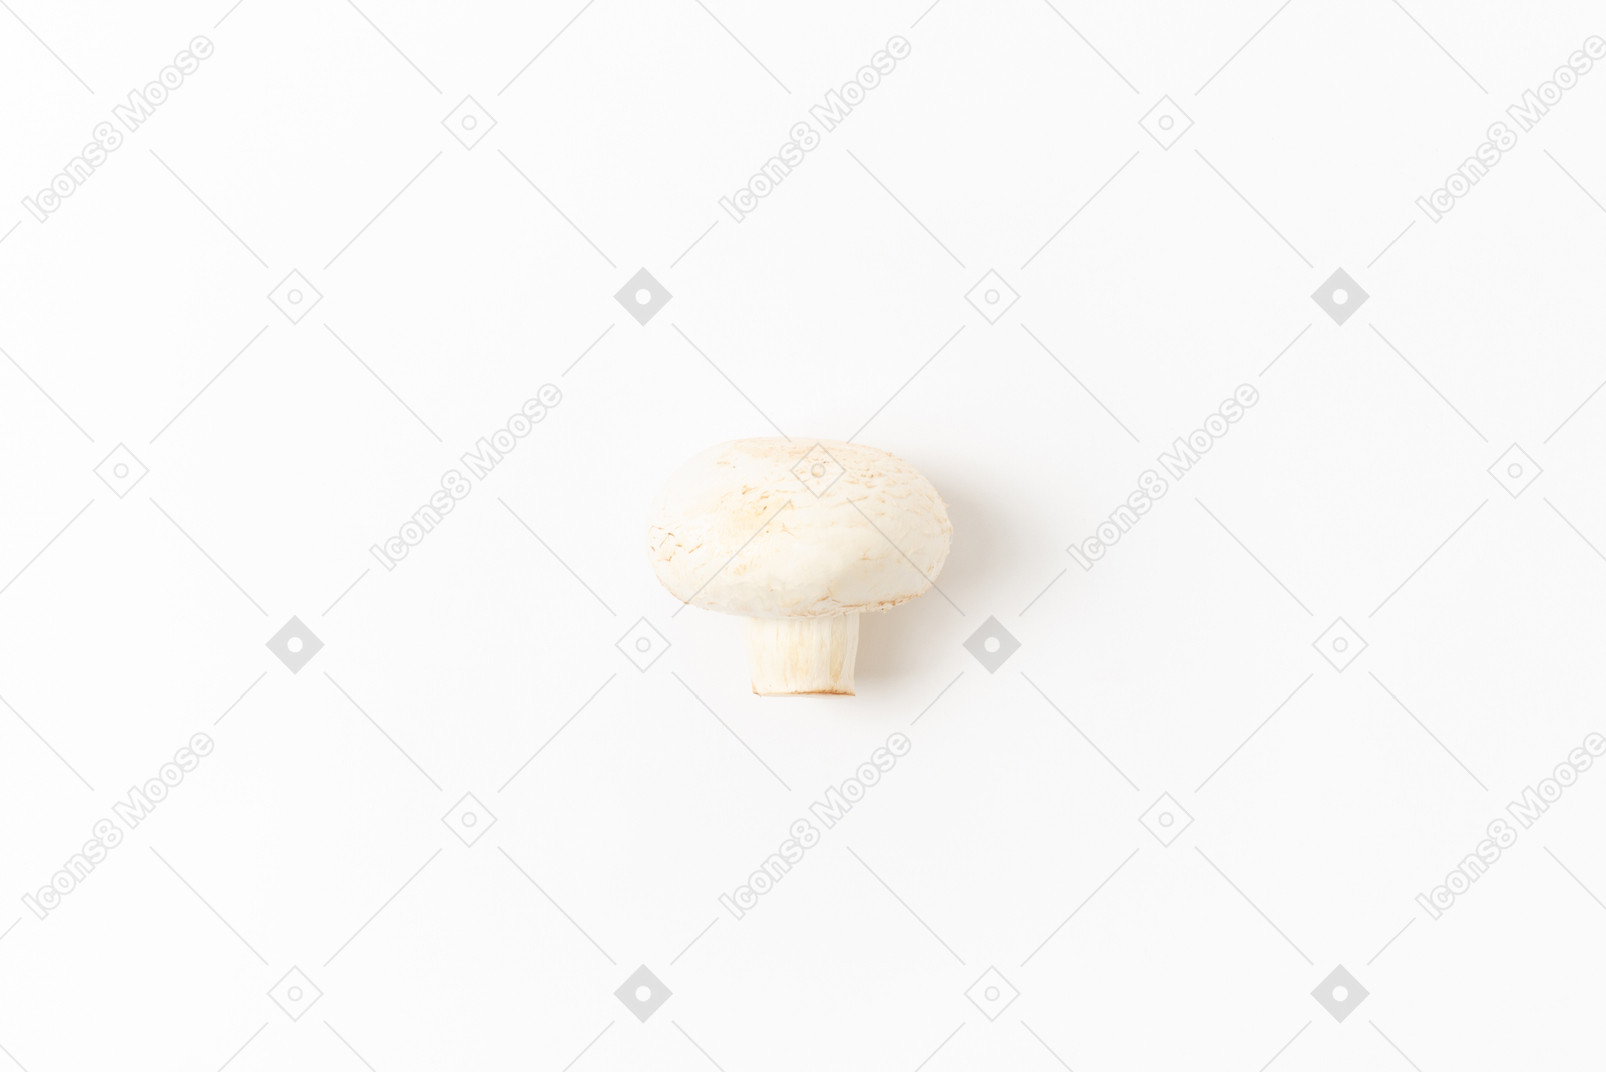 Des idées sur la recette de champignons?